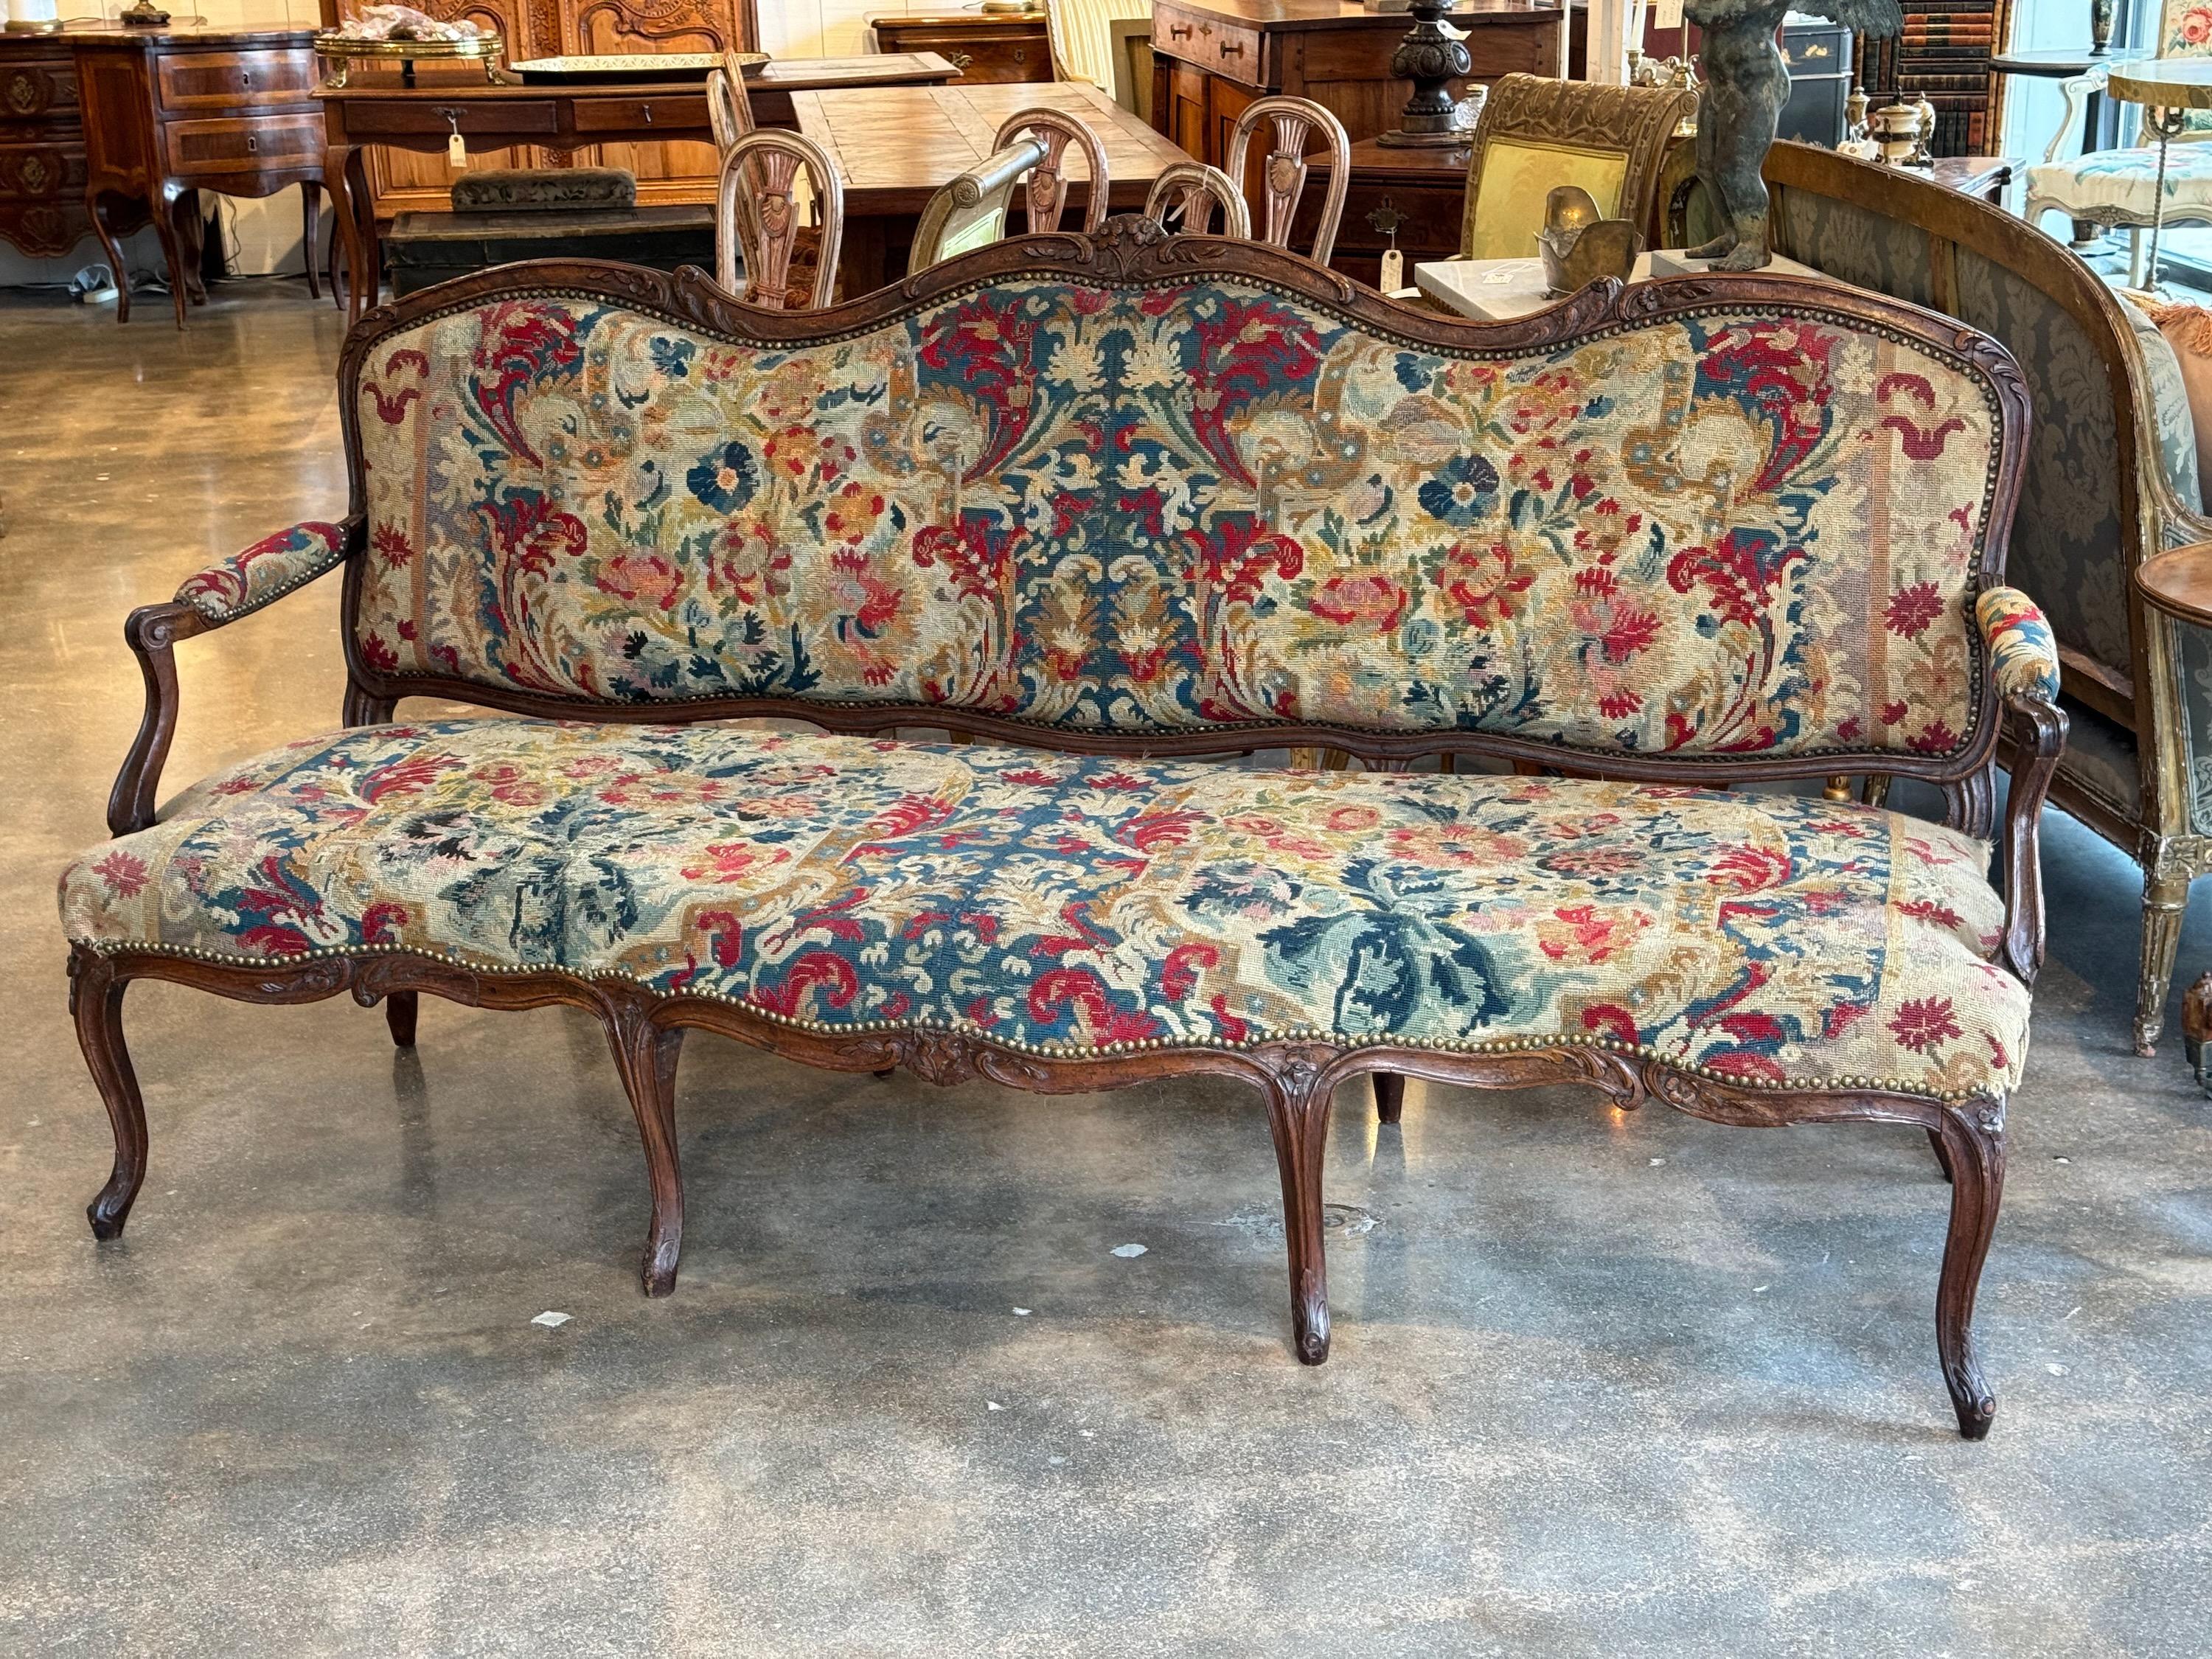 Dies ist ein wunderschönes französisches Sofa, das mit Nadelspitze bezogen ist. Es hat anmutige Linien. Perfekte Flurbank.